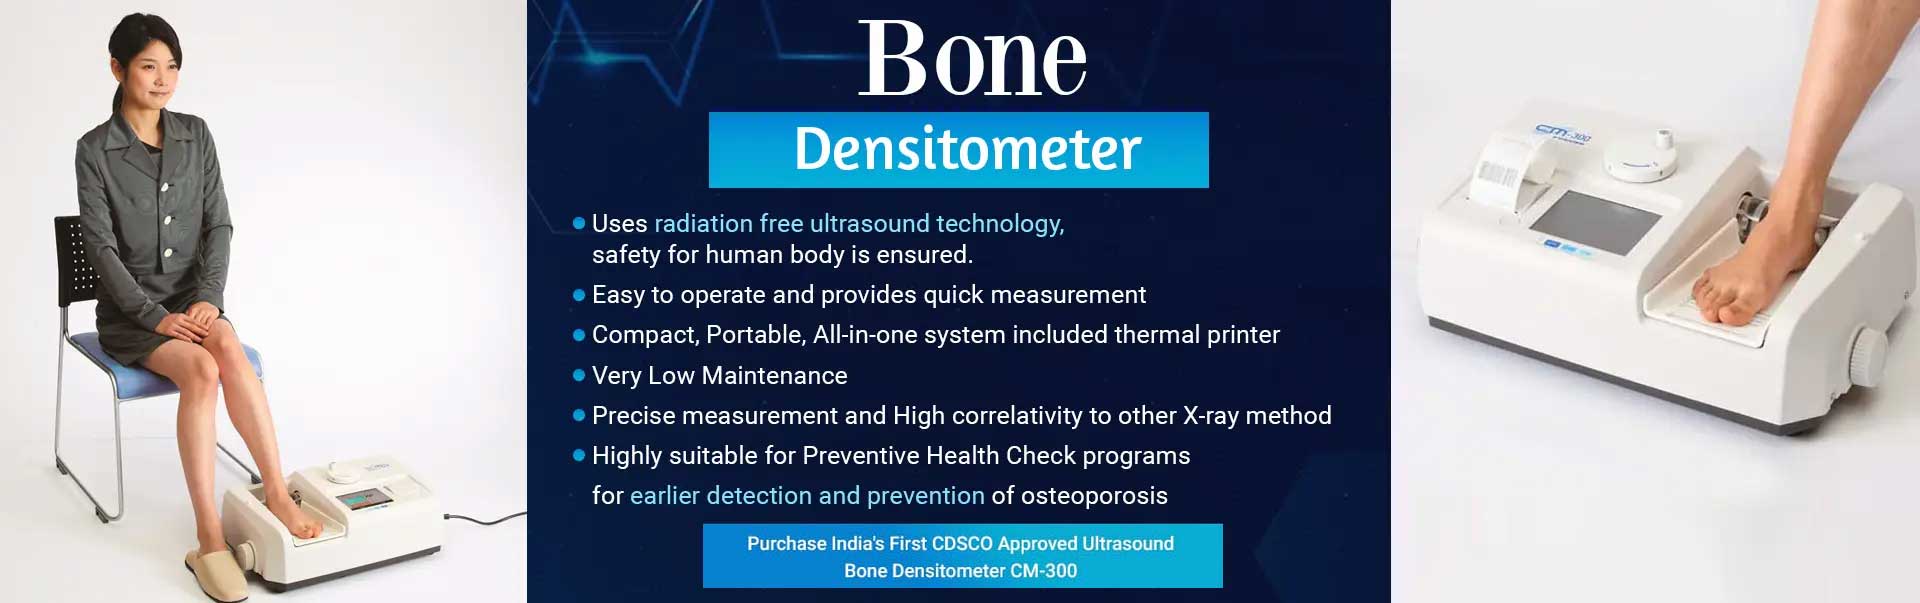 Bone Densitometer Manufacturers in Ahmedabad